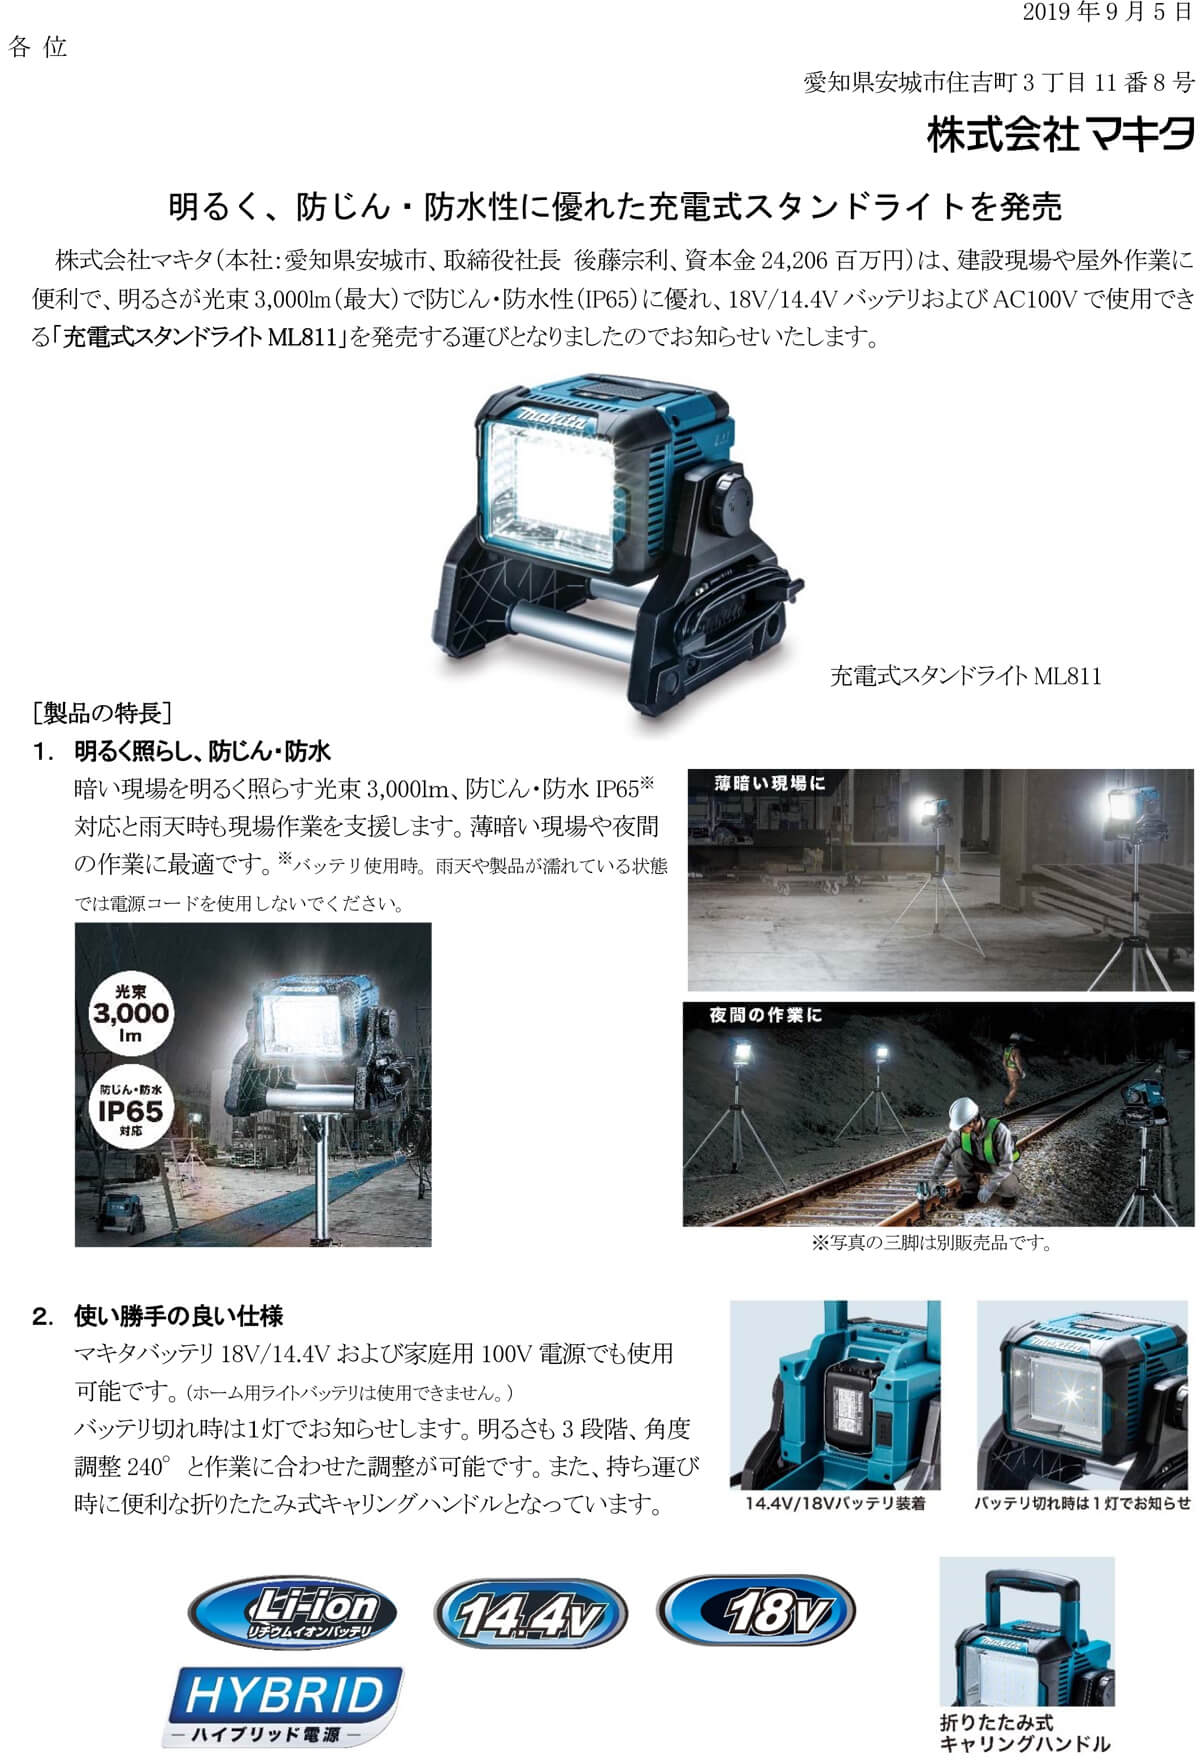 日本製 マキタ ML811 充電式LEDスタンドライト IP65対応 防じん 防水LEDワークライト 14.4V 18V兼用 AC100V対応  ACアダプタ付属 本体のみ コードレス